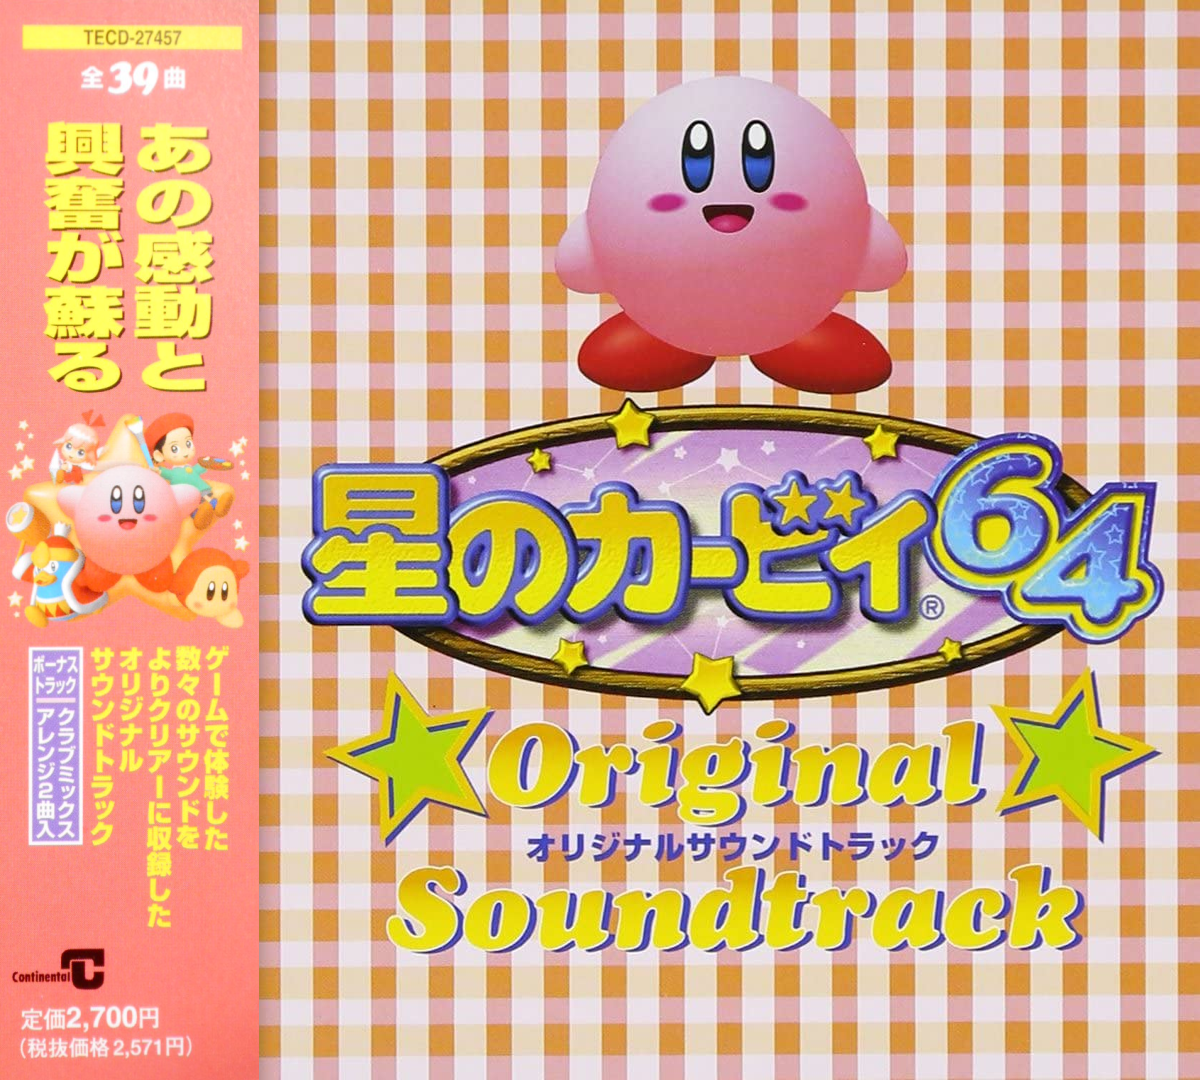 Hoshi no Kirby 64 Original Soundtrack - WiKirby: it's a wiki